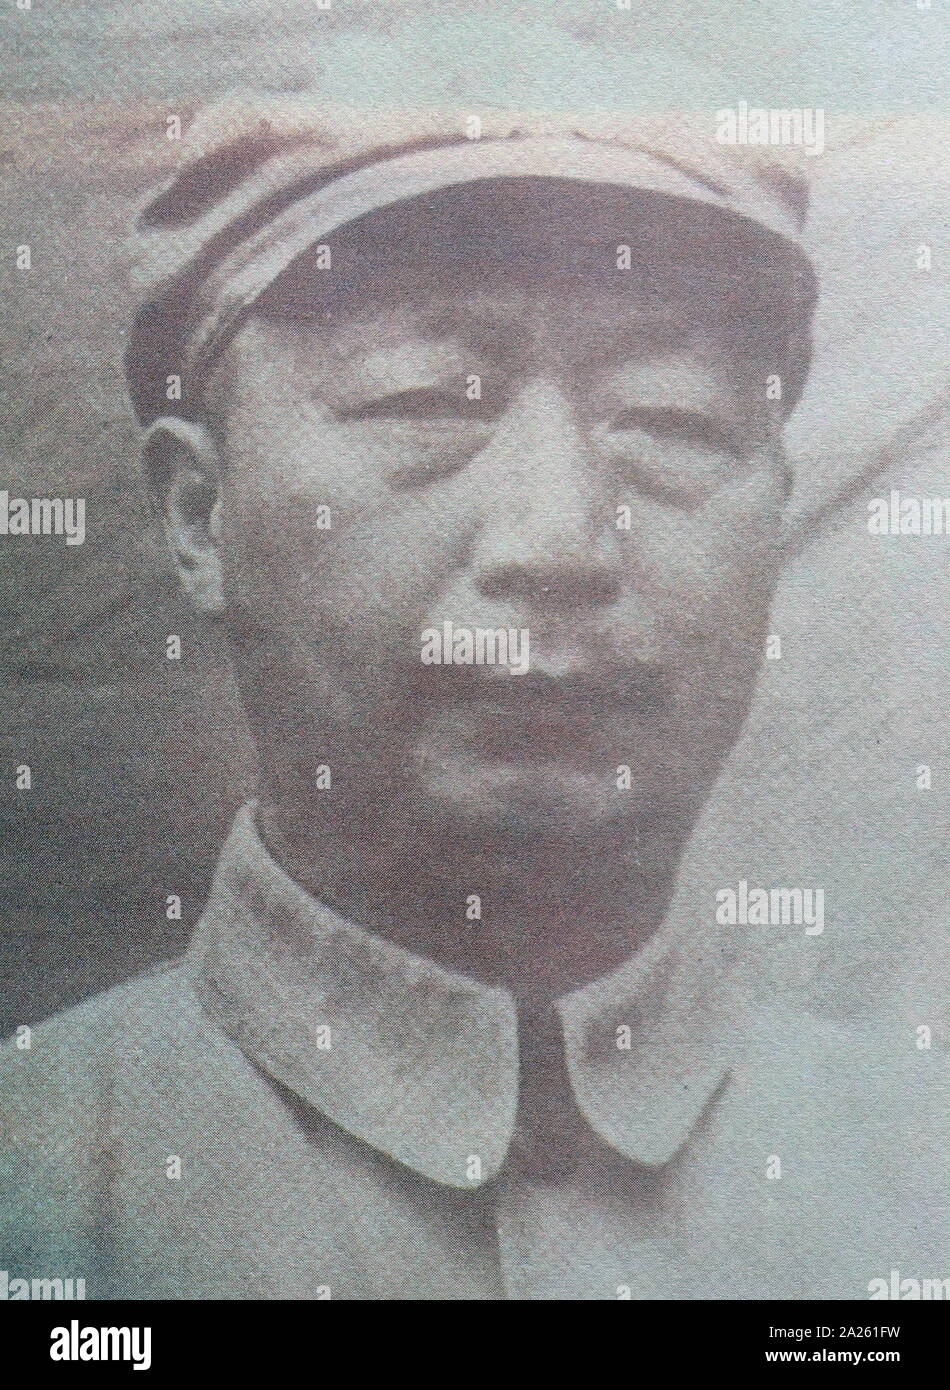 Nie Rongzhen (1899-1992), prominente chinesische Kommunistische militärische Führer, und eine von zehn Marshals in der Volksbefreiungsarmee Chinas Stockfoto